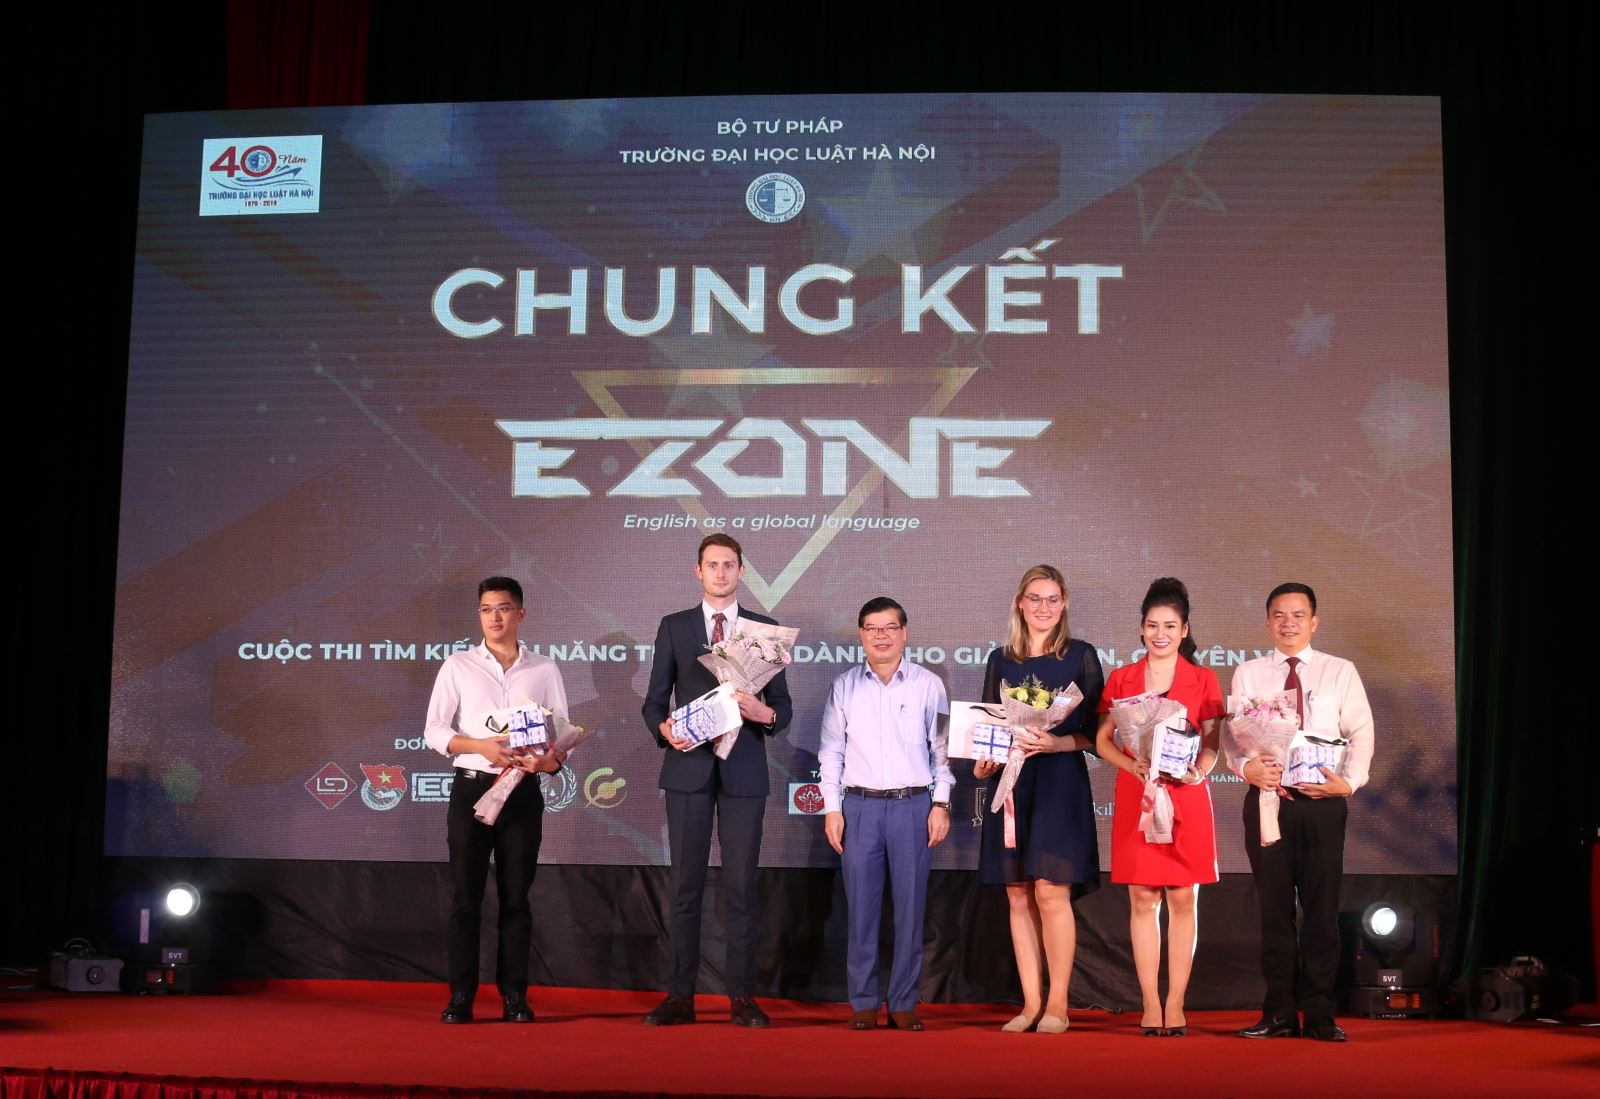 Thầy Trần Quang Huy tặng hoa cho Ban giám khảo của cuộc thi 